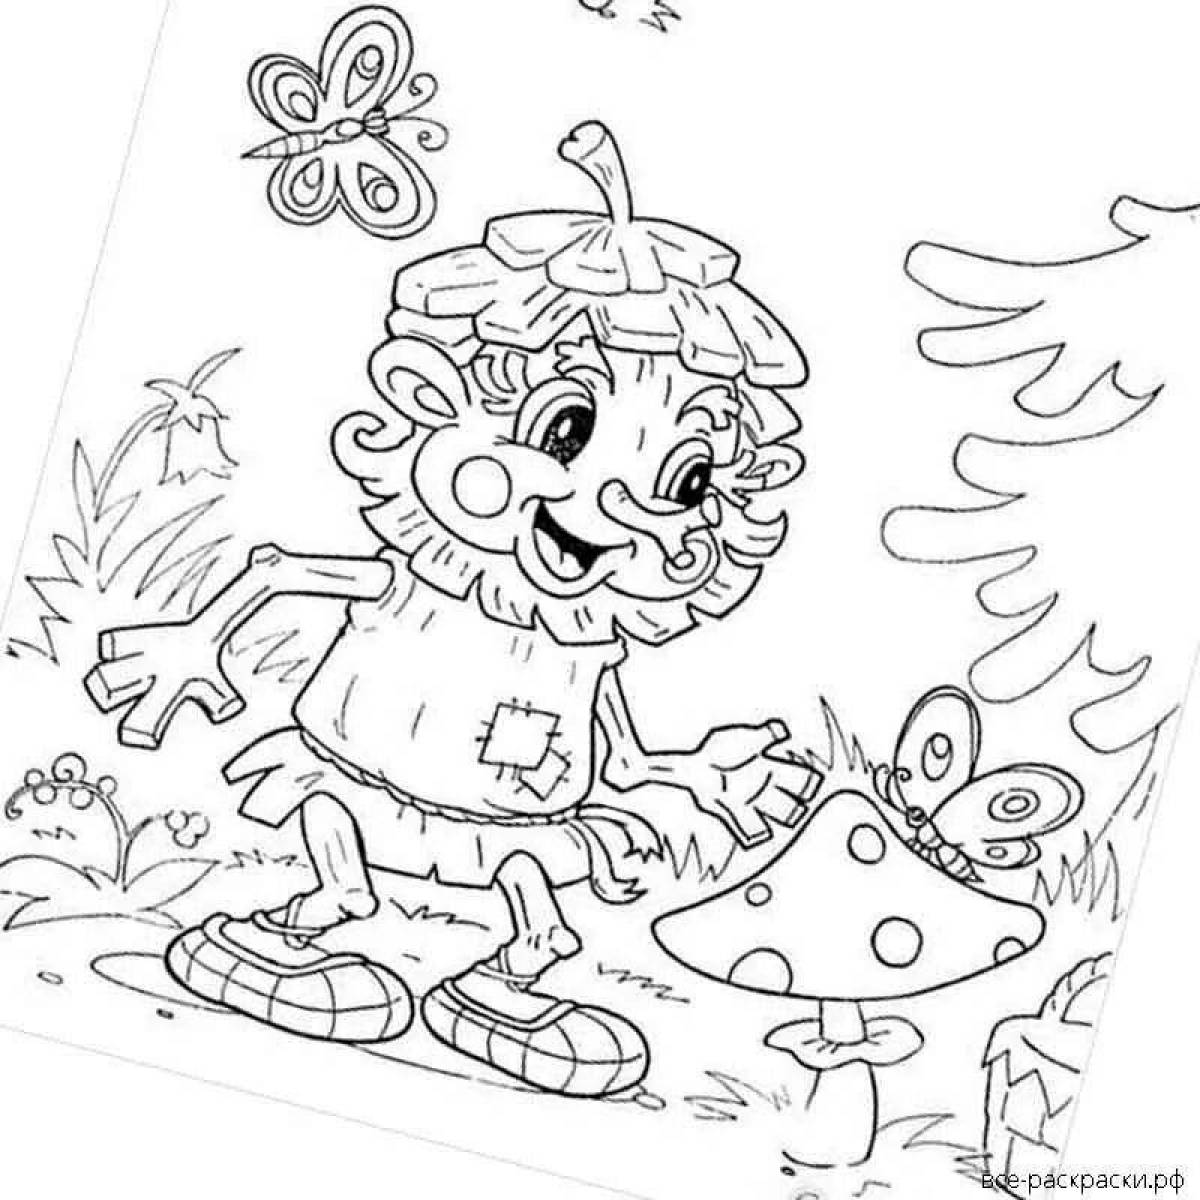 Artistic goblin coloring book